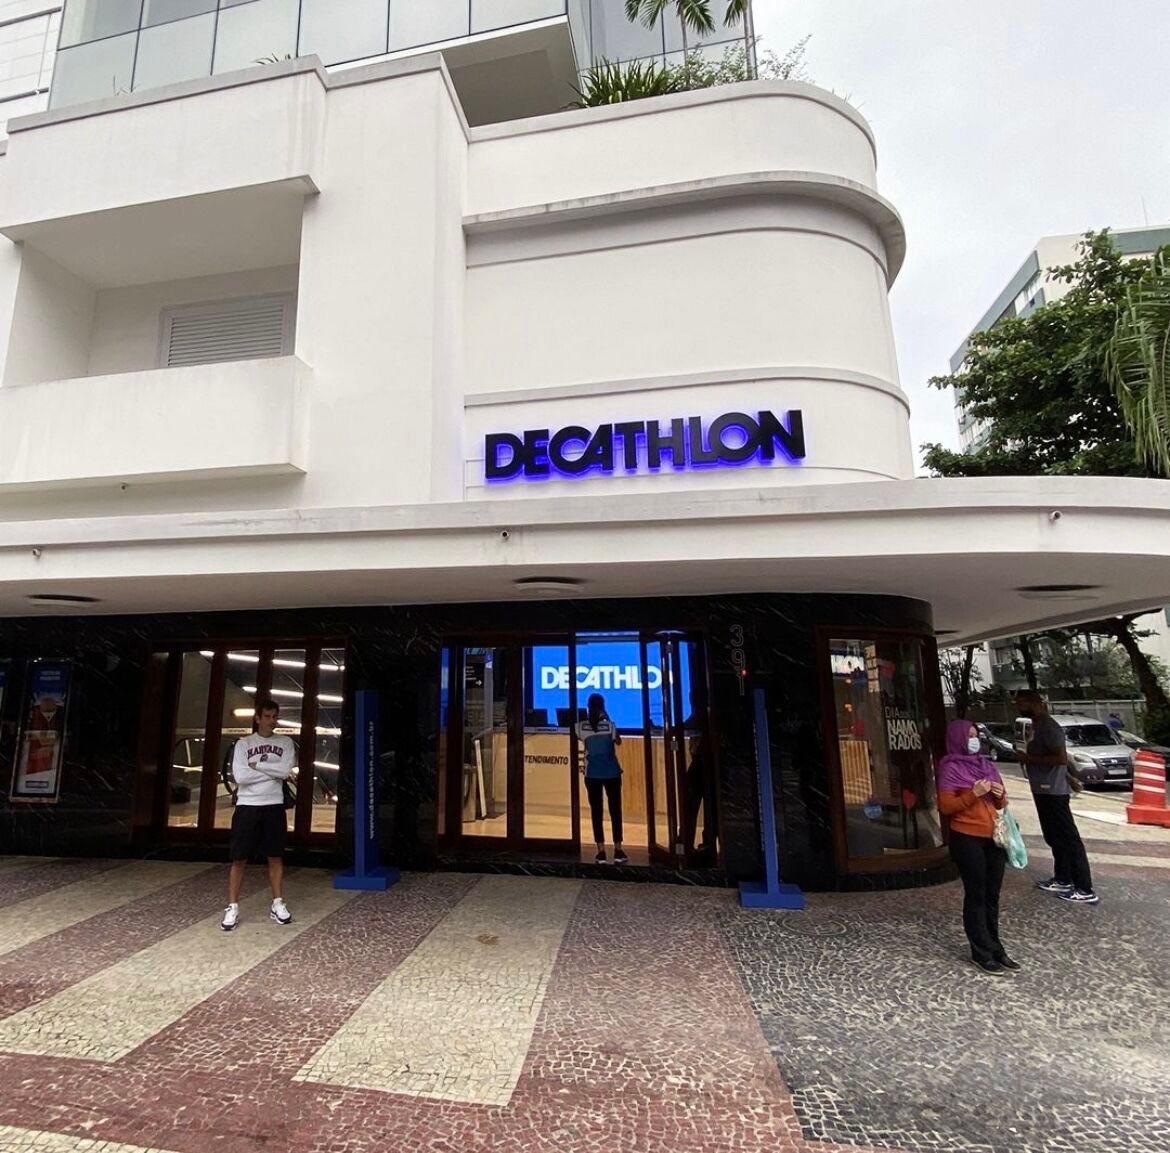 Decathlon inaugura a sua segunda loja em Brasília e 43ª no país - Newtrade